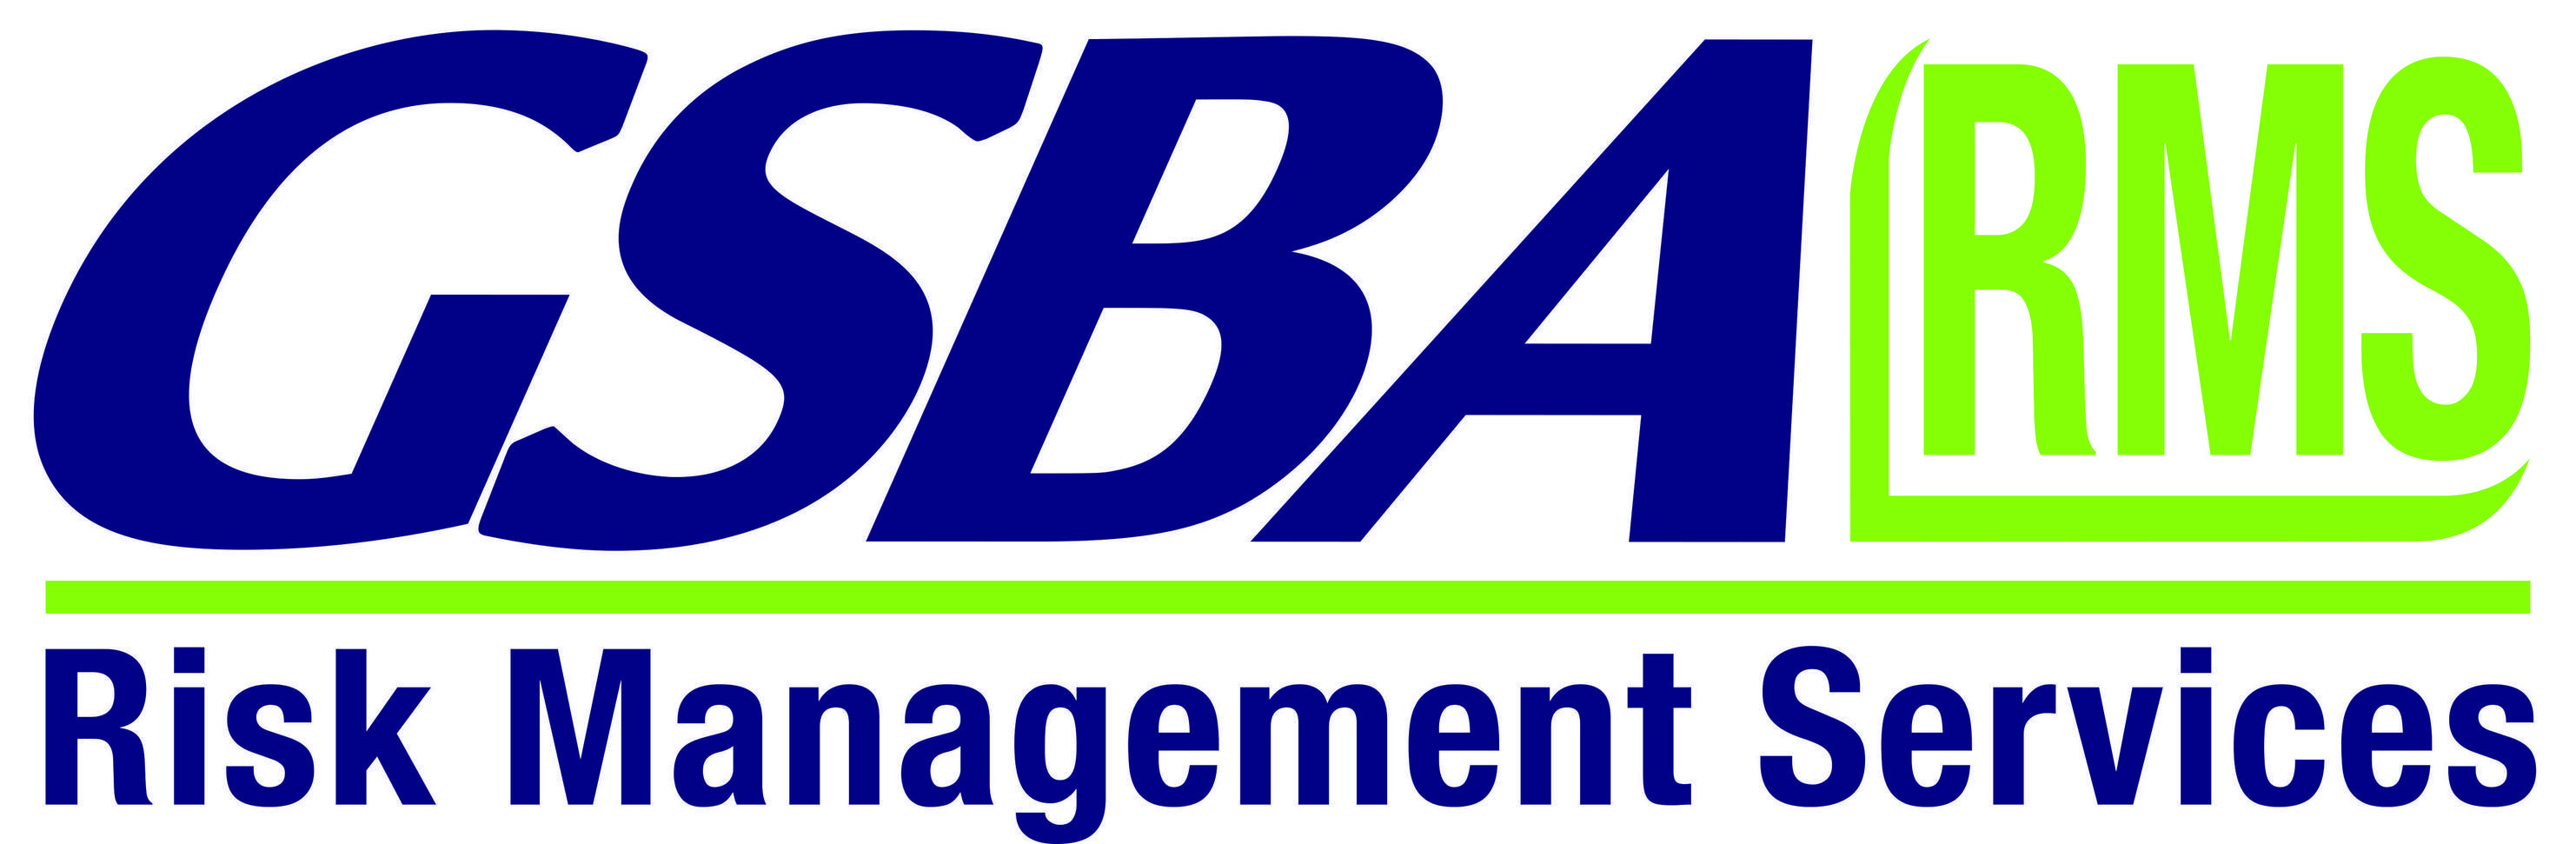 GSBA Logo - GSSA